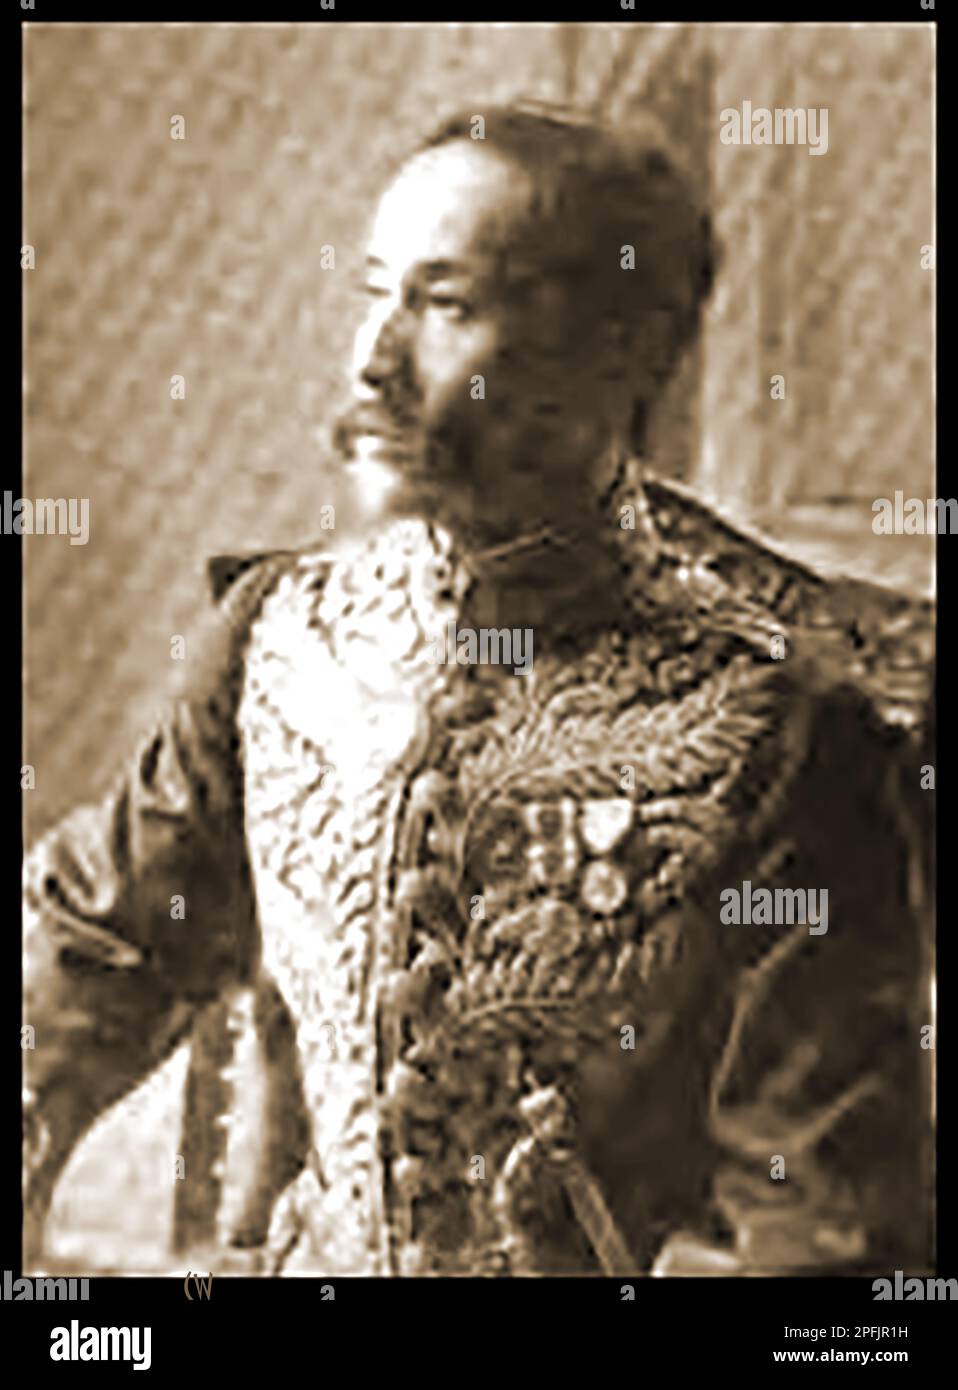 Ein Presseporträt aus dem späten 19. Jahrhundert von Phy Akaraj Oradhara, (gelistete Schreibweisen variieren) siamesischer (jetzt Thailand) Minister in Washington USA. -- ภาพเหมือนสื่อมวลชนปลายศตวรรษที่ 19 ของ Phy Akaraj Oradhara (การสะกดคําที่ระบุไว้แตกต่างกันไป) -- Stockfoto